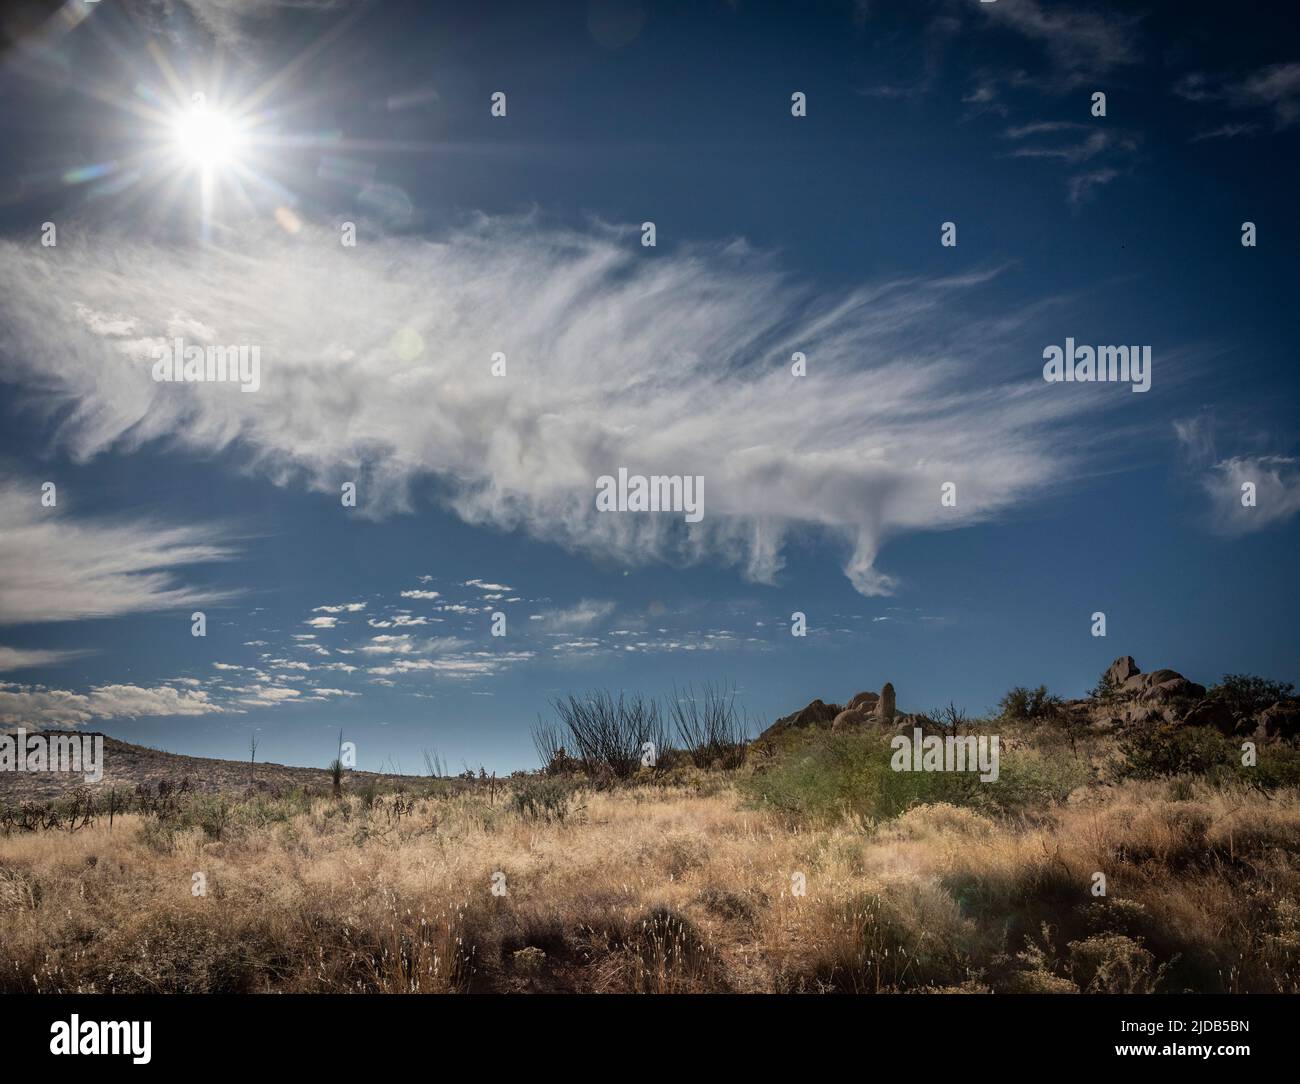 Nuage de plumes dans le ciel de l'Arizona. Les nuages de cirrus sont parfois appelés « nuages de plumes » ou « queues de juments ». Ils sont composés de glace hexagonale c... Banque D'Images